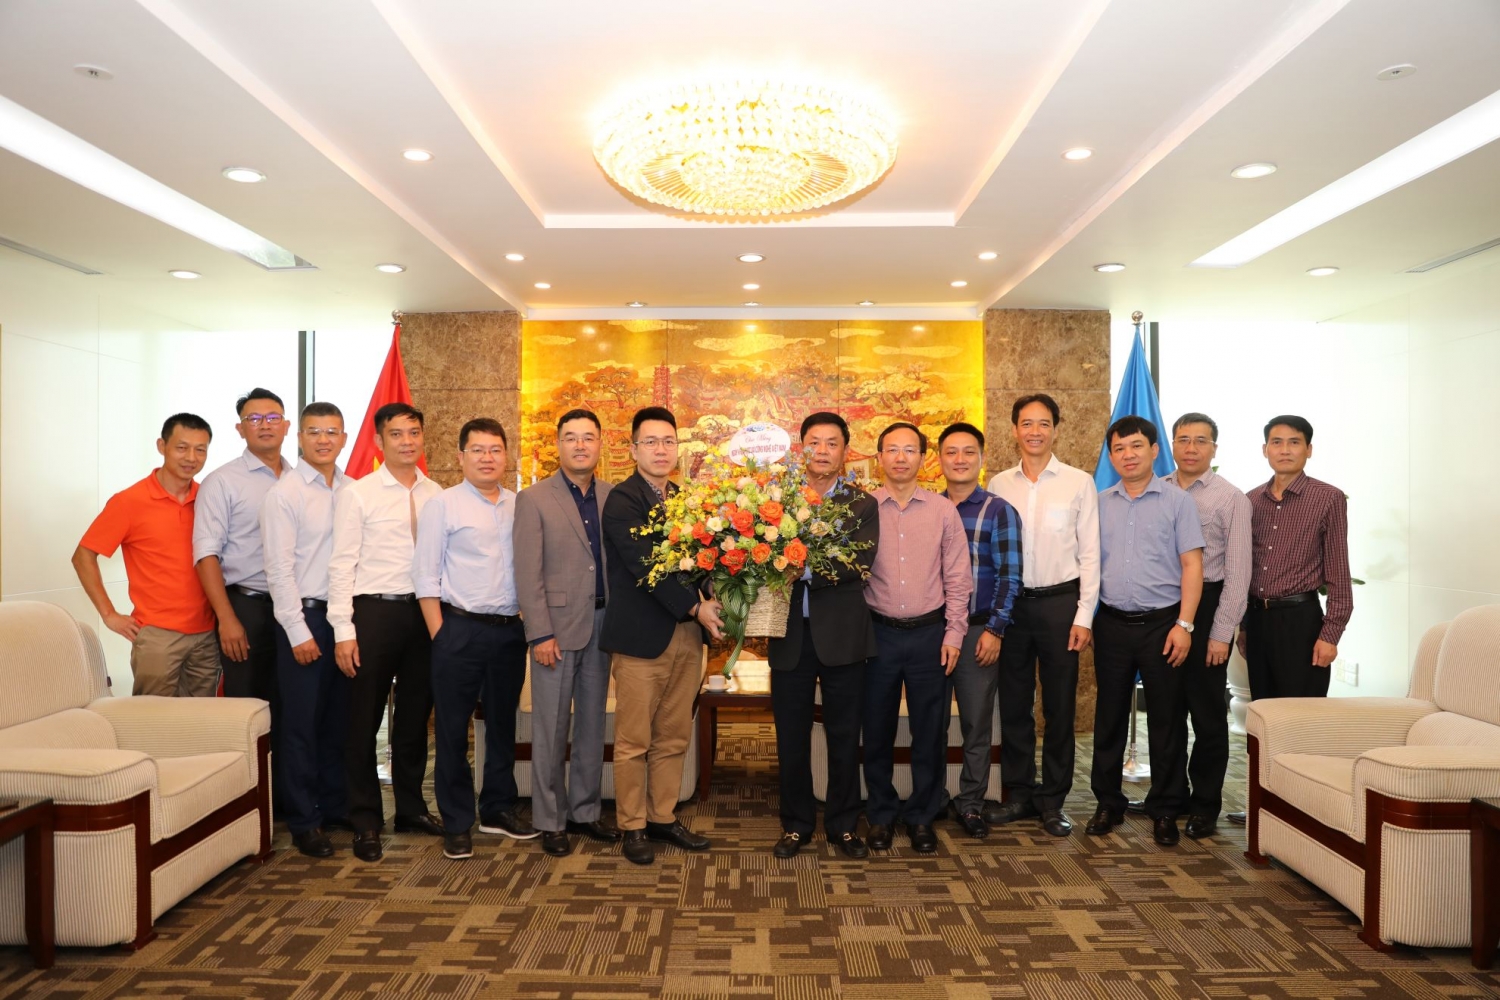 Lãnh đạo PVEP chúc mừng đội ngũ làm khoa học nhân Ngày Khoa học Công nghệ Việt Nam”